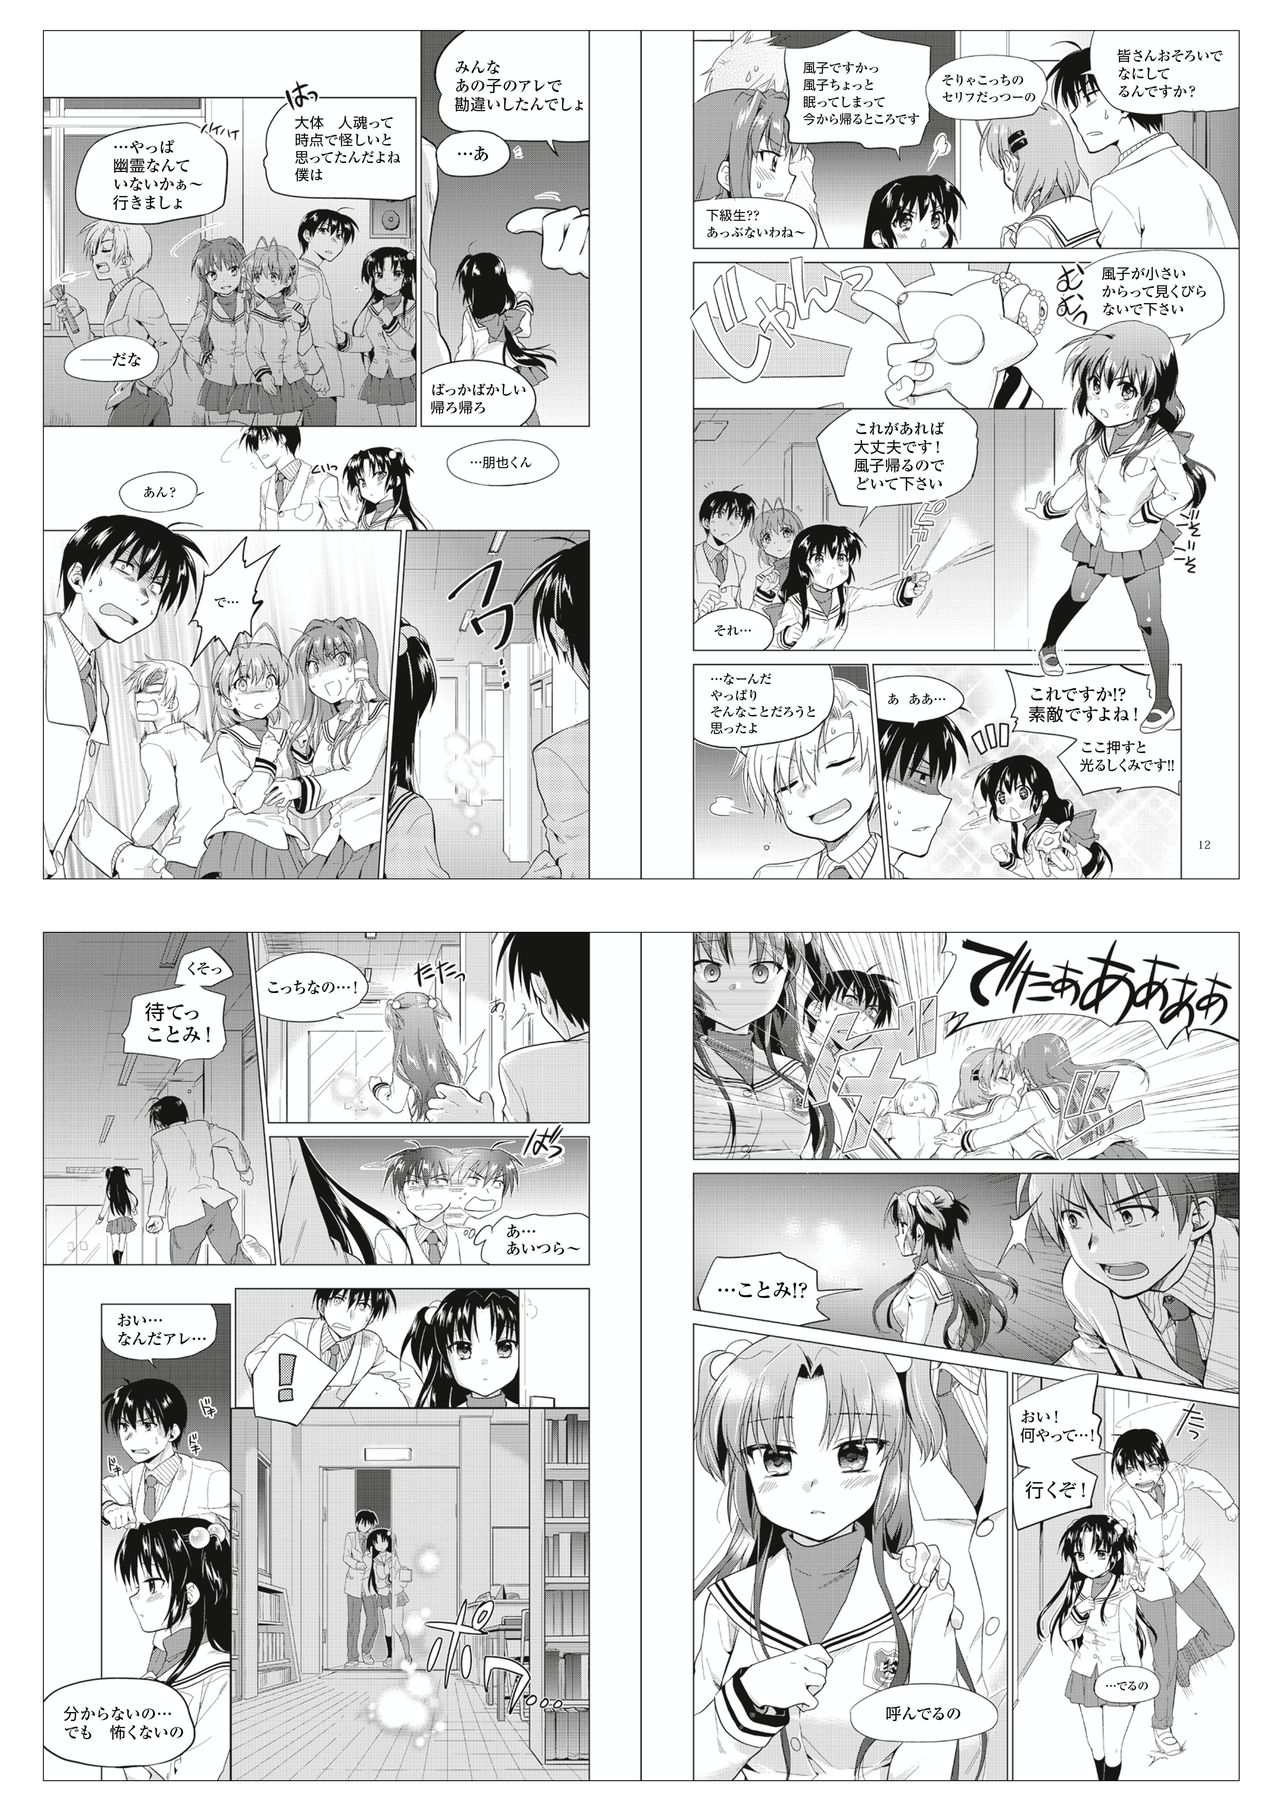 CLANNAD - Anthology Manga 58